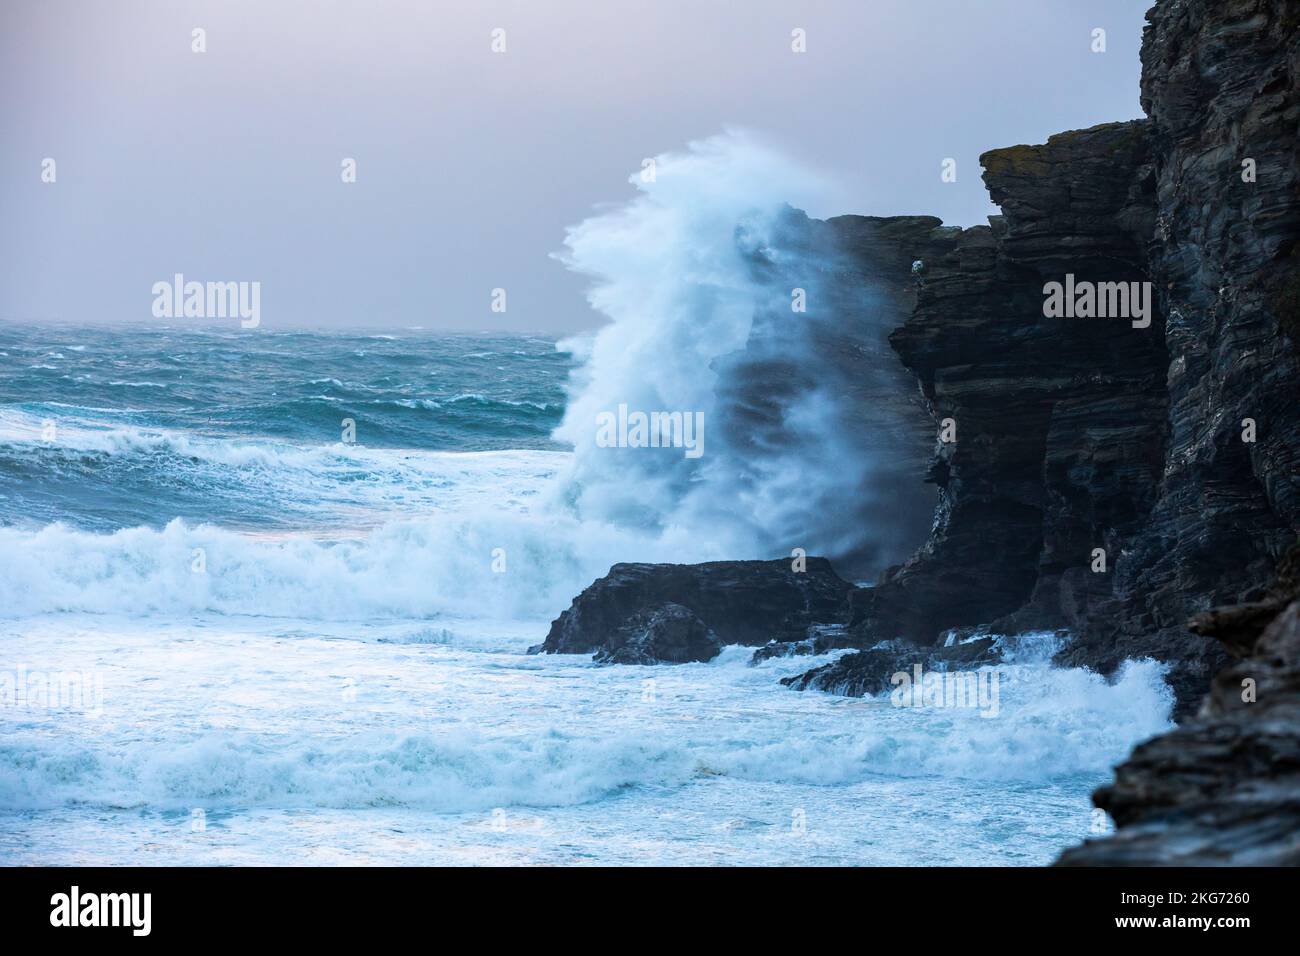 Portreath,Cornwall,22nd novembre 2022,grandes vagues et mers de tempête à Portreath,Cornwall tôt ce matin causé par de forts vents durant la nuit. La température était de 9C. La prévision est pour la pluie lourde toute la journée avec des vents de 51mph calmant au fur et à mesure de la journée.Credit: Keith Larby/Alamy Live News Banque D'Images